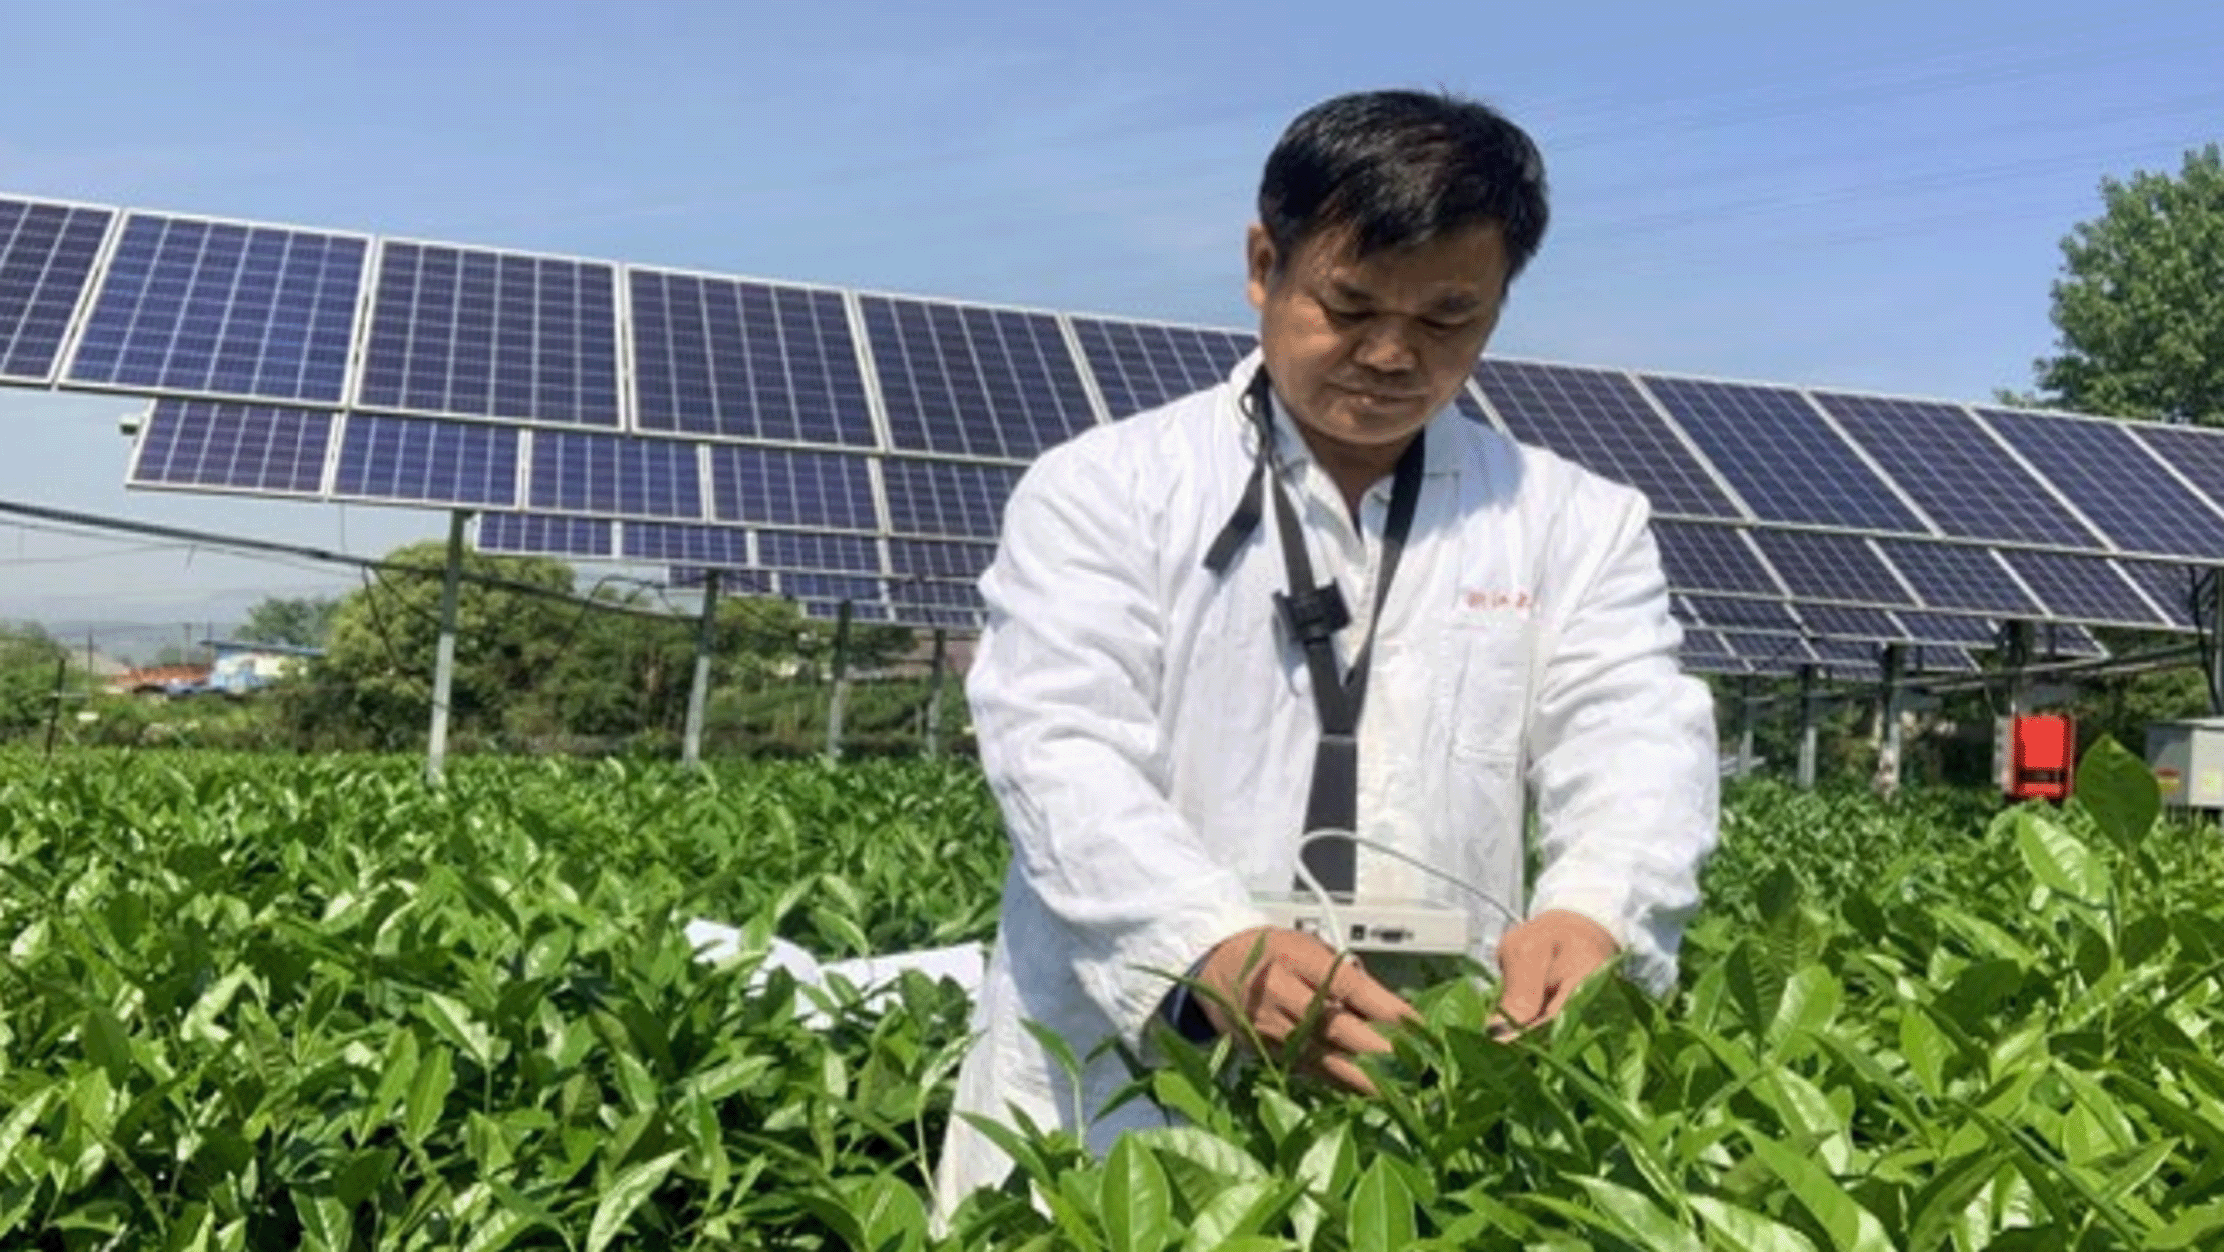 Prof. Liang çay bitkisinin, agrivoltaik sistemlerin yarattığı gölgeden fayda gördüğünü söylüyor